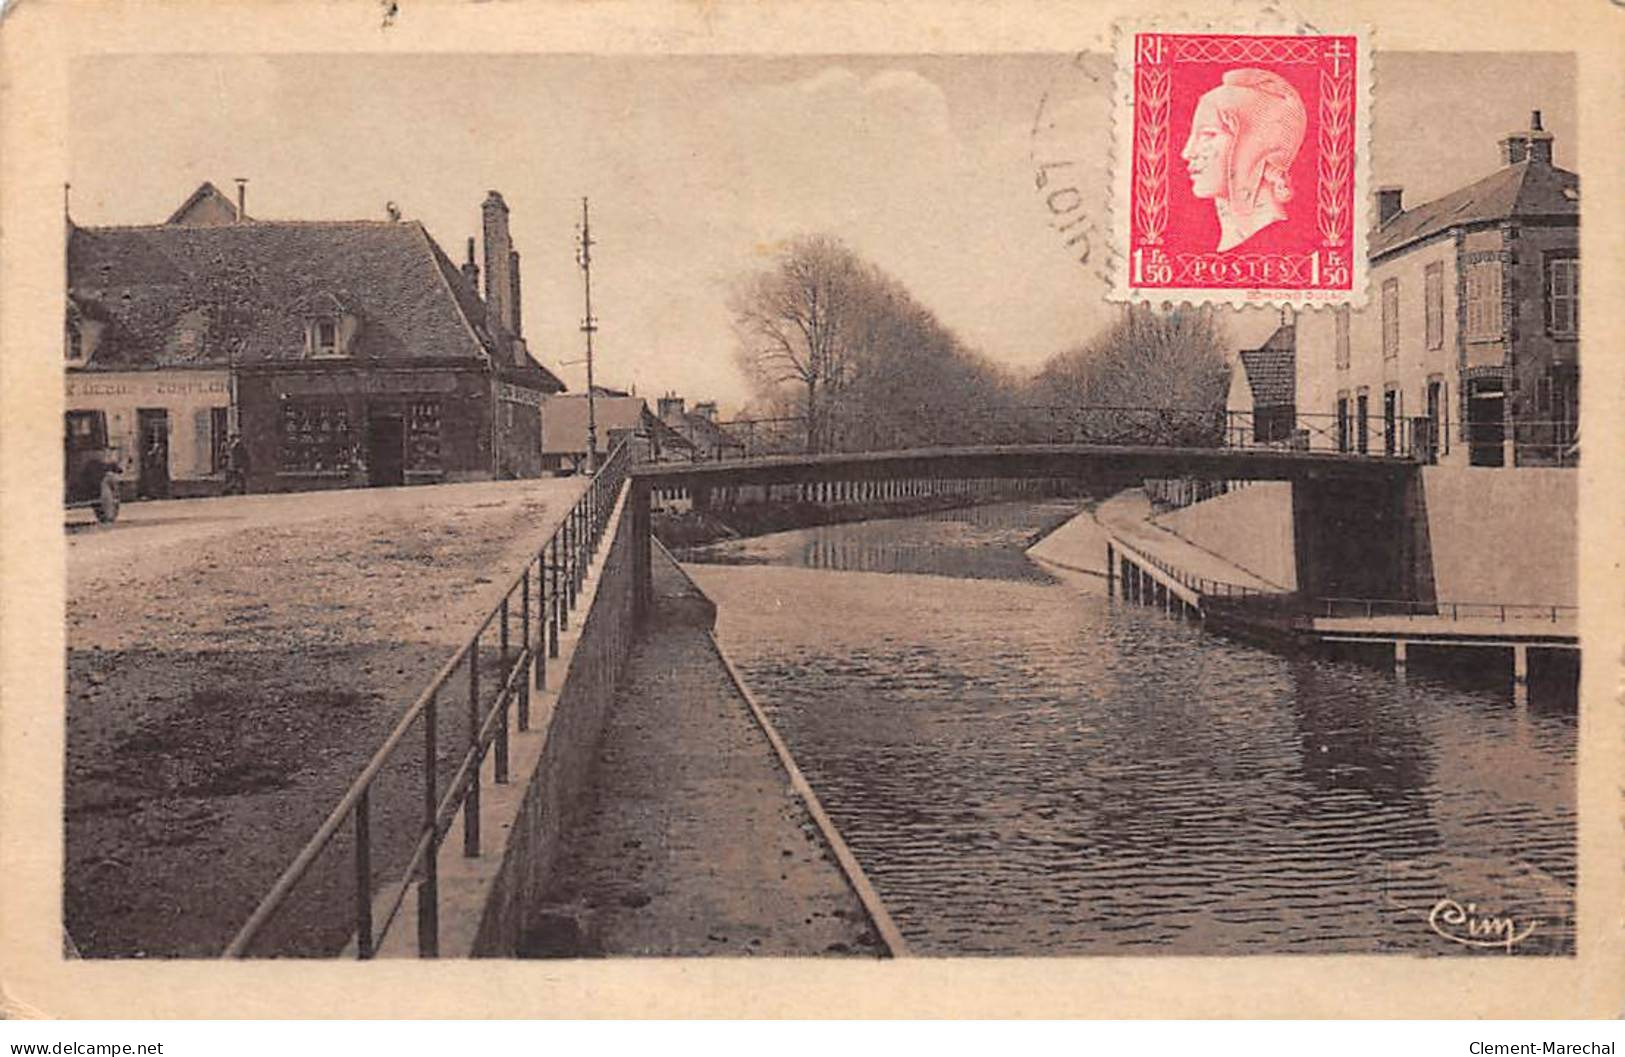 CHATILLON COLIGNY - Le Canal Et Le Pont Du Puyrault - état - Chatillon Coligny